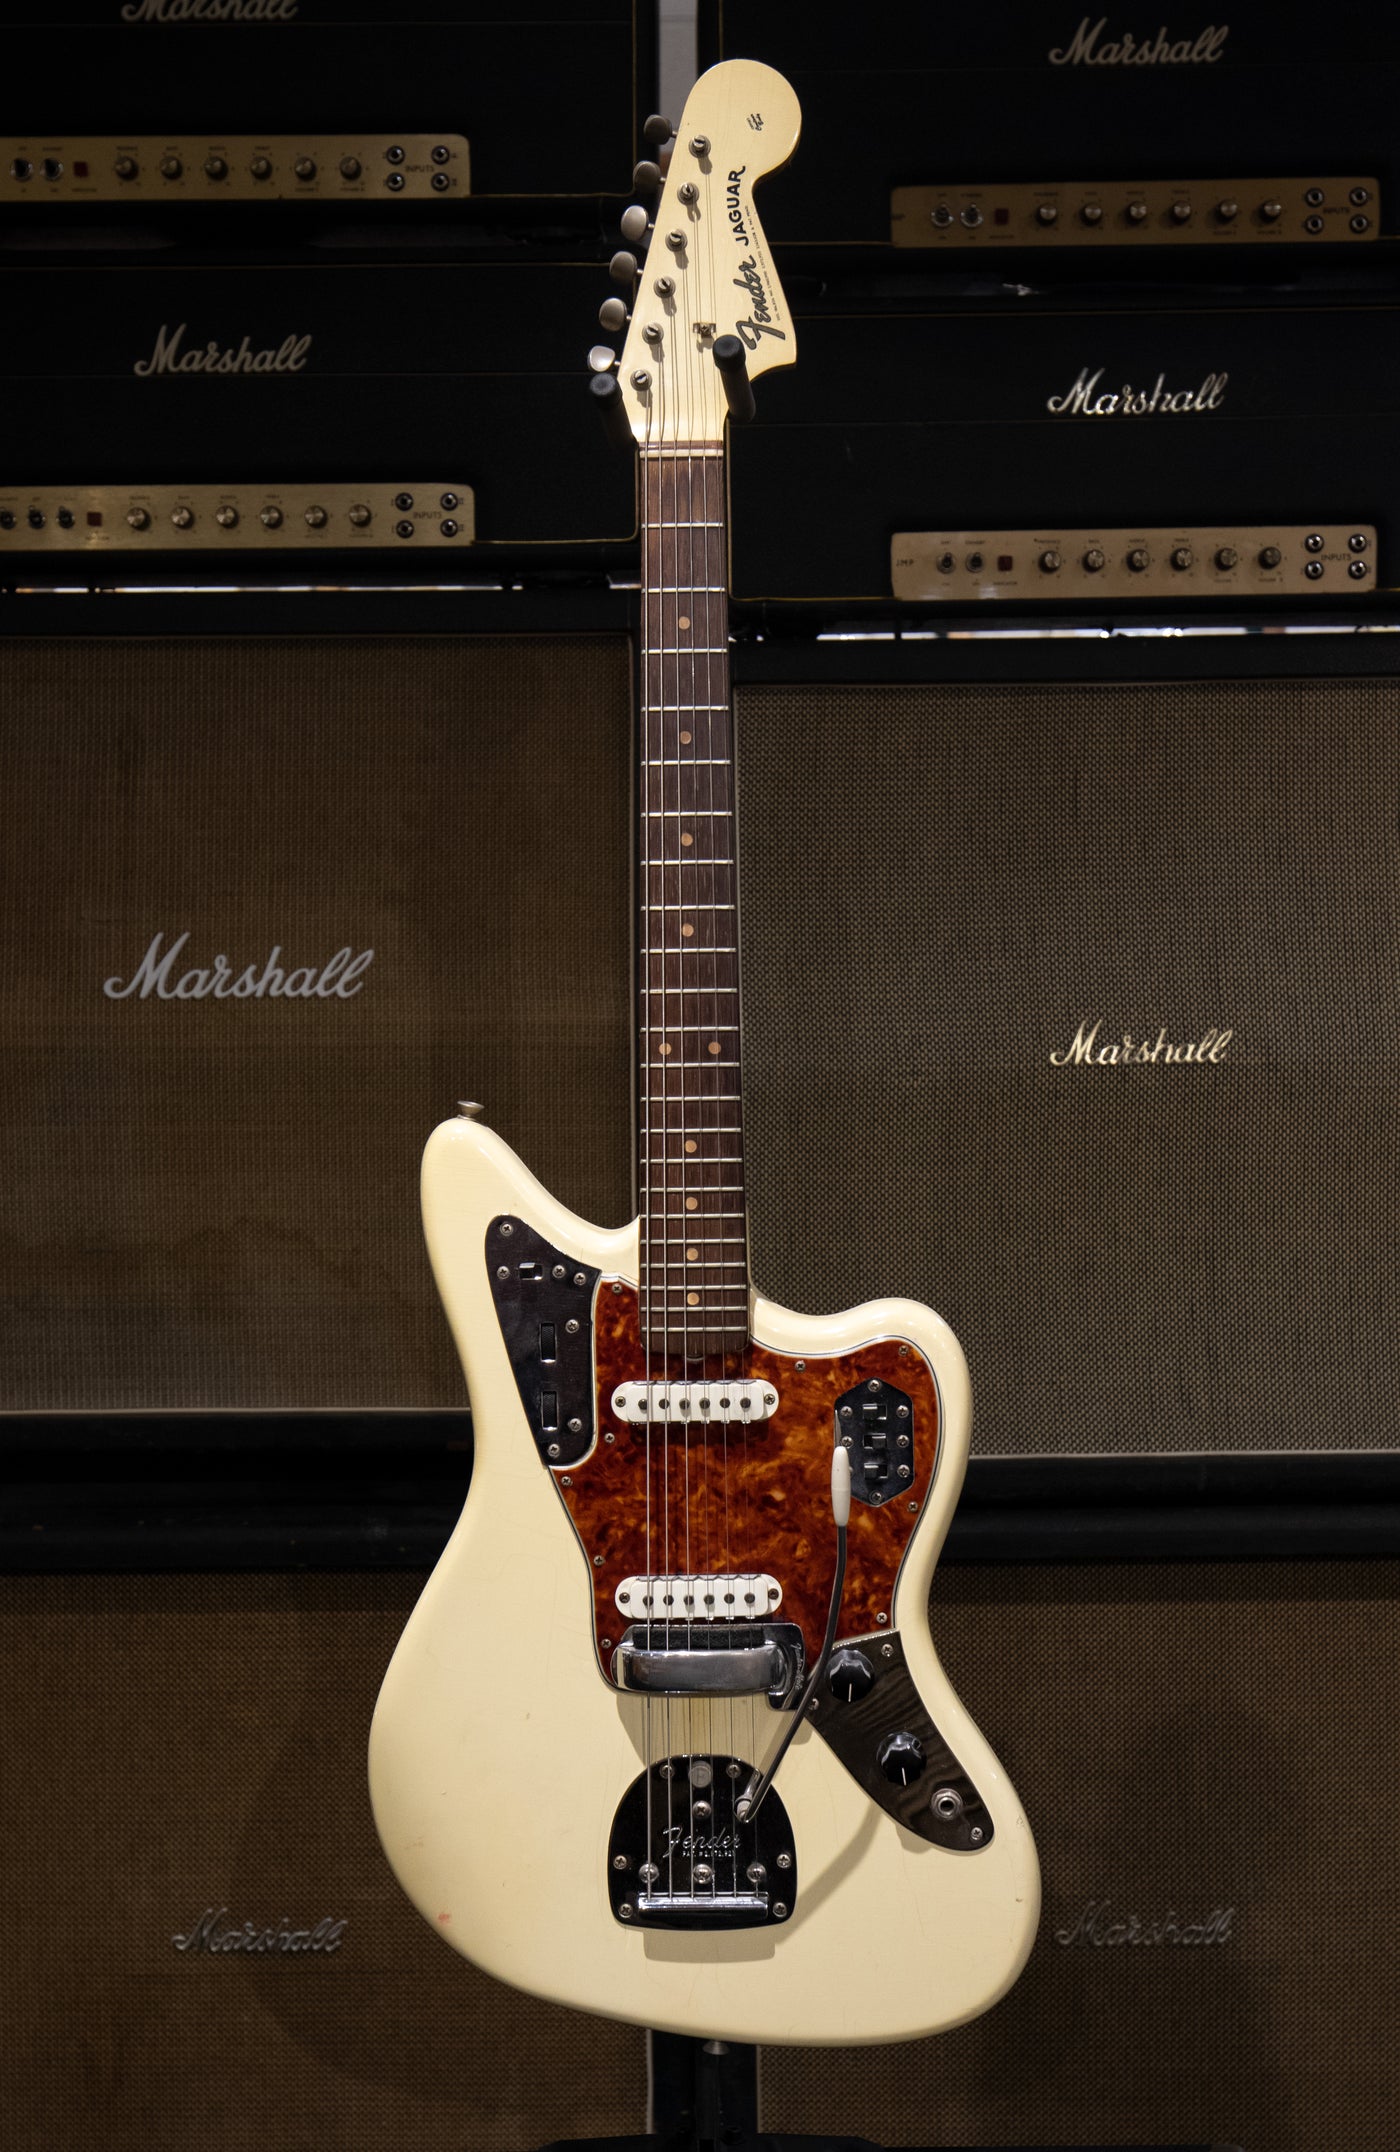 1964 Fender Jaguar - Olypmic White